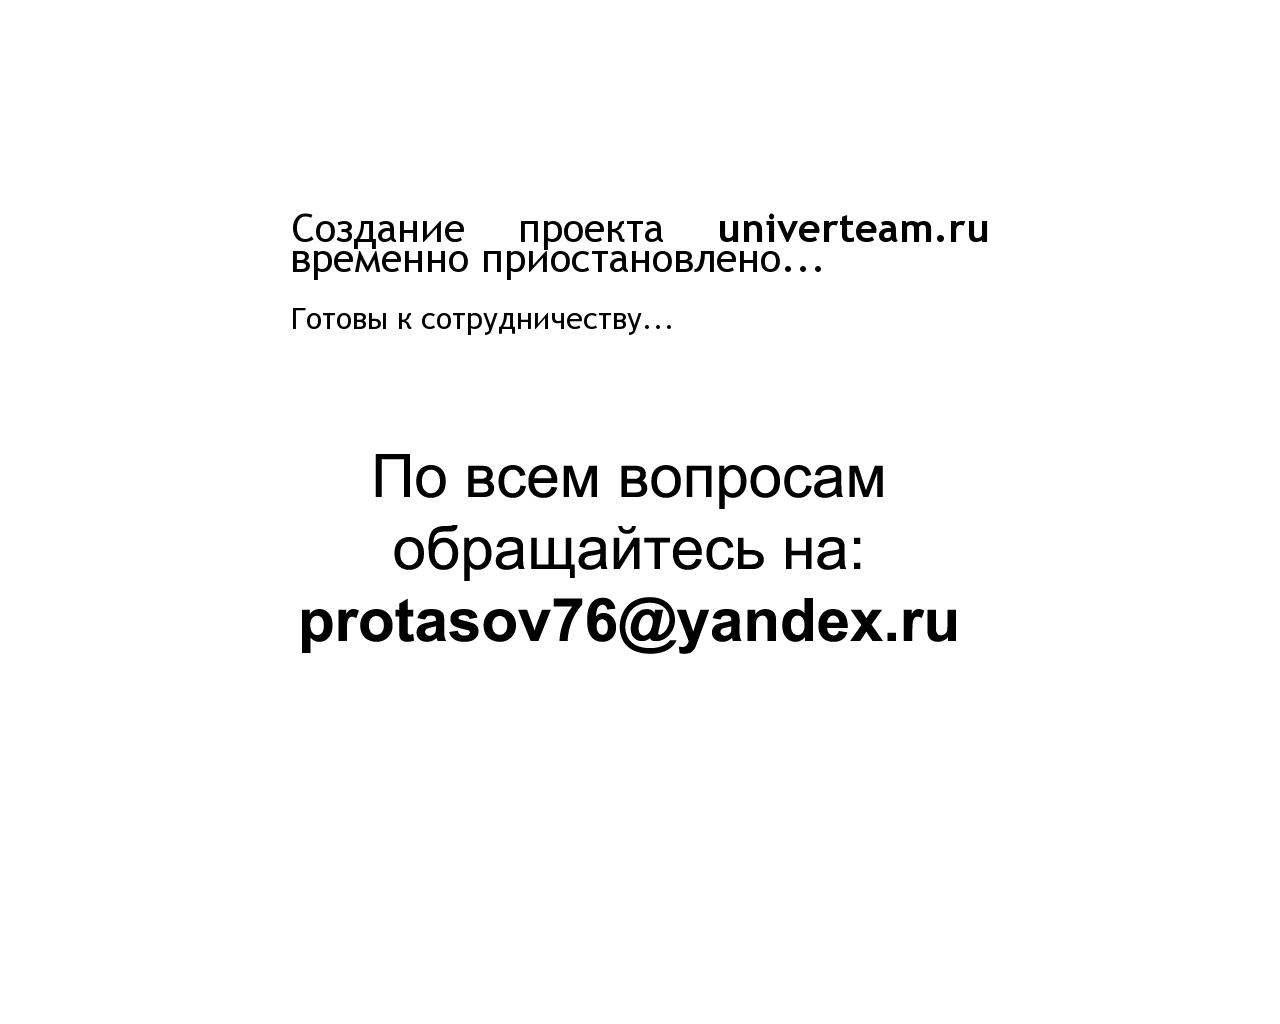 Изображение сайта univerteam.ru в разрешении 1280x1024